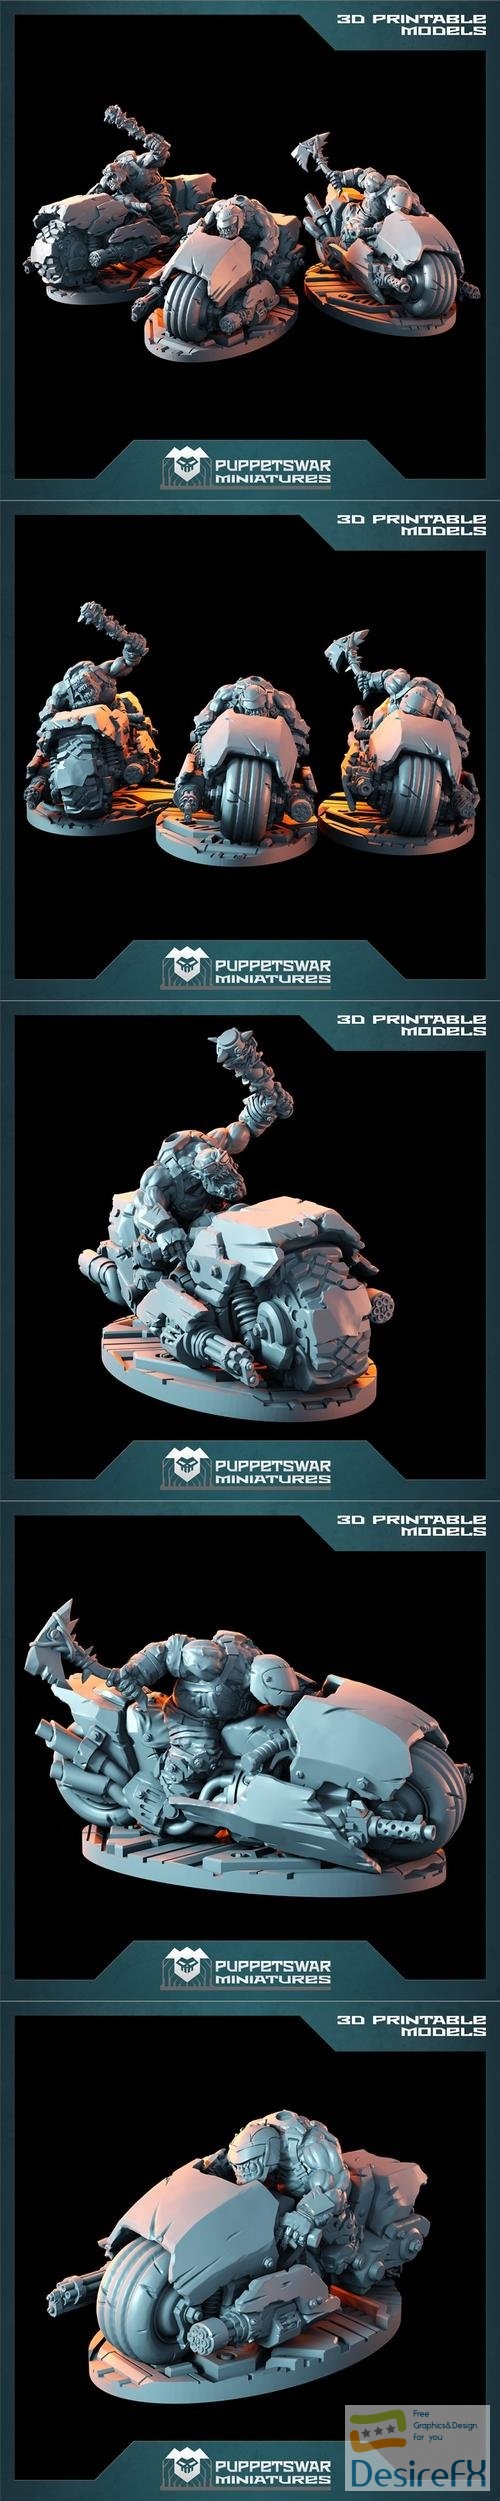 Puppetswar Miniatures - Ork Biker Set – 3D Print